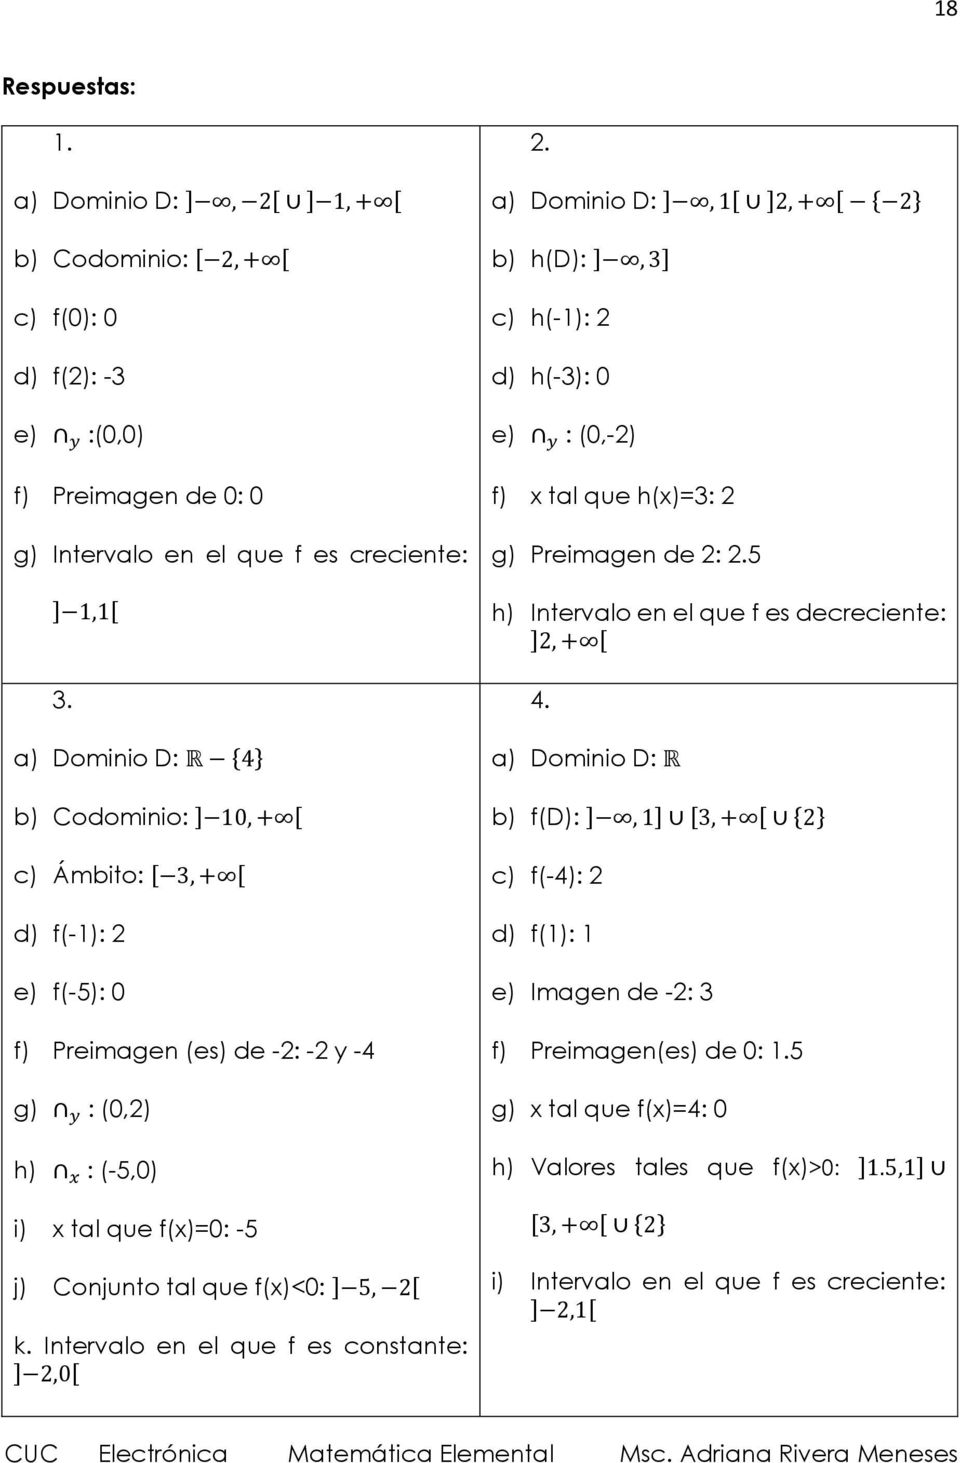 ] 5, 2[ k. Intervalo en el que f es constante: ] 2,0[ 2. a) Dominio D: ], 1[ ]2, + [ { 2} b) h(d): ], 3] c) h(-1): 2 d) h(-3): 0 e) y : (0,-2) f) x tal que h(x)=3: 2 g) Preimagen de 2: 2.